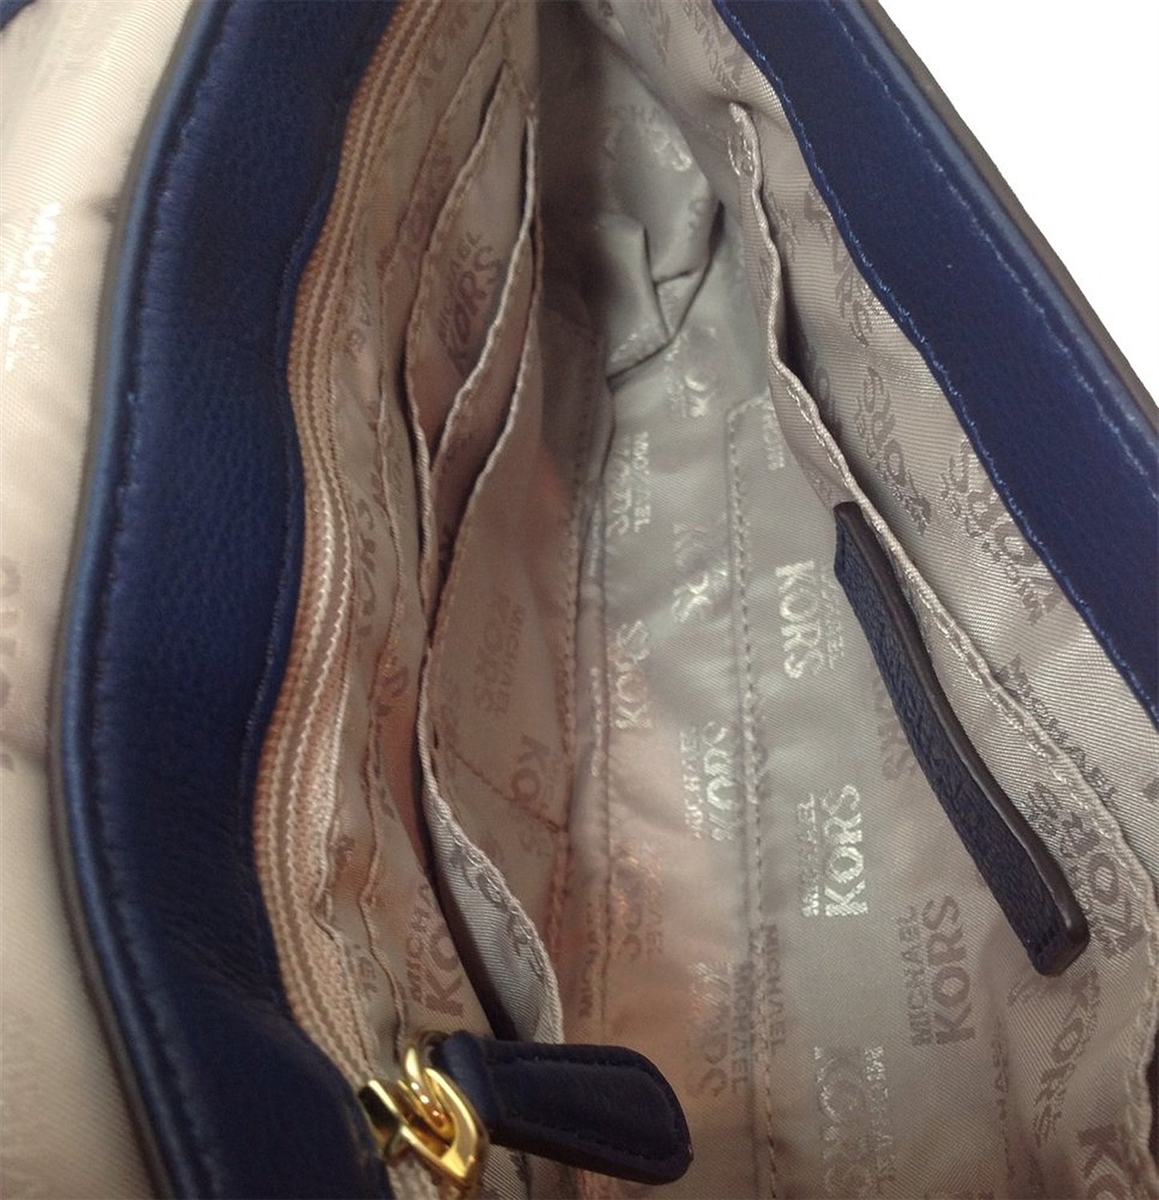 Jet Set leather shoulder bag Handbag 398337, HealthdesignShops